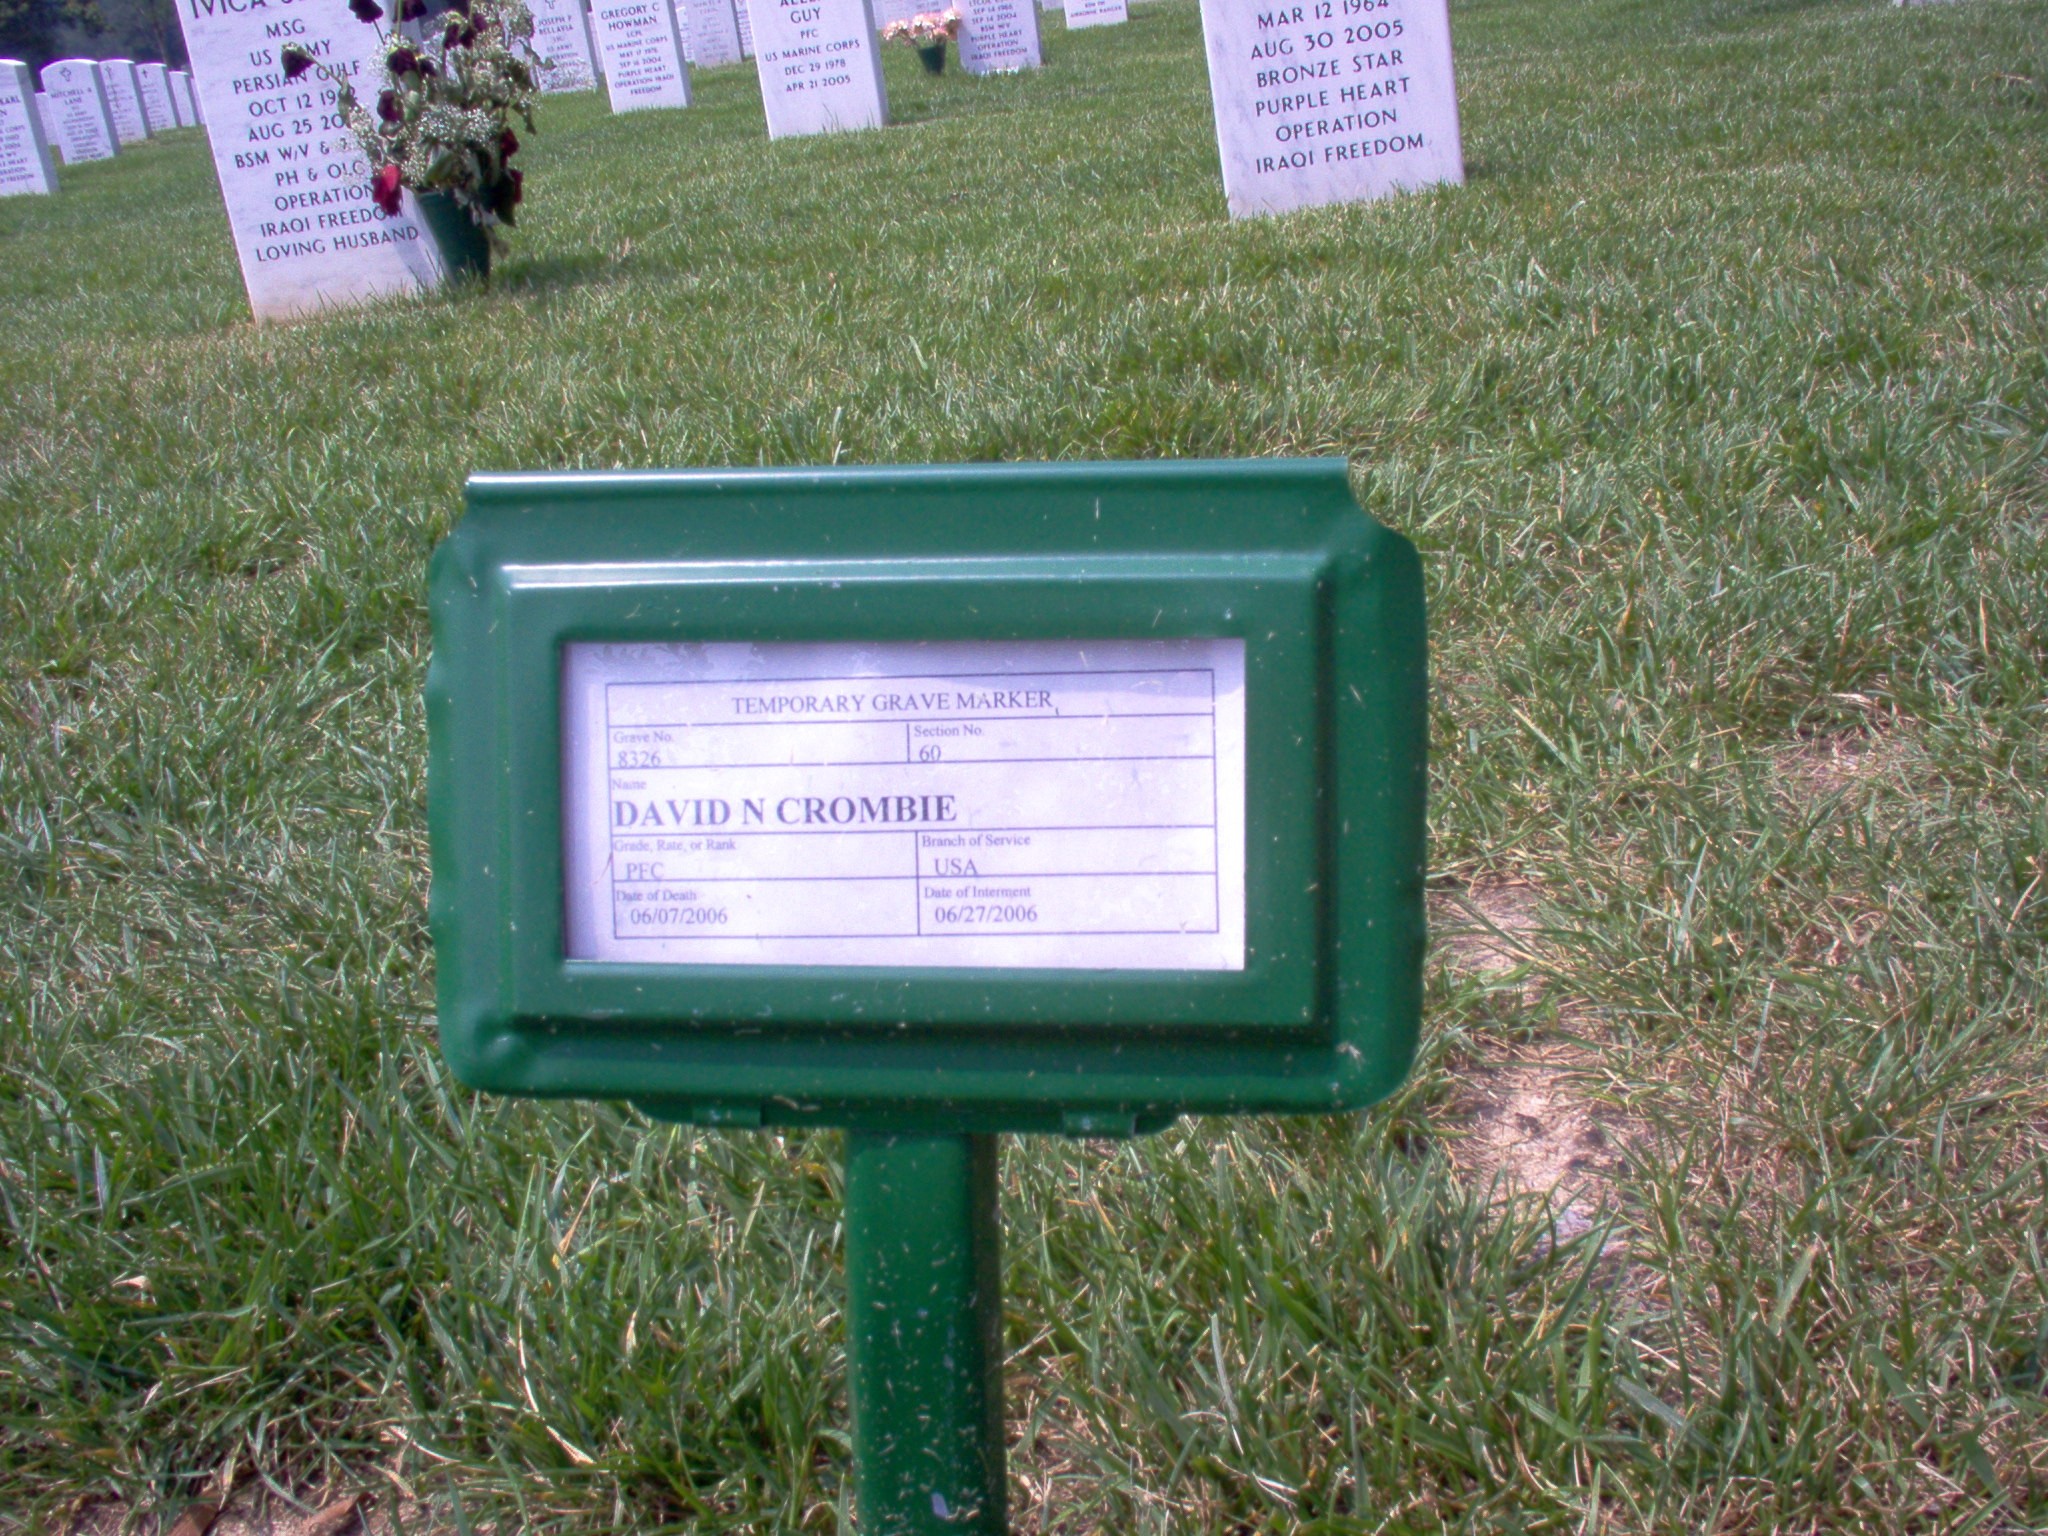 dncrombie-gravesite-photo-july-2006-001